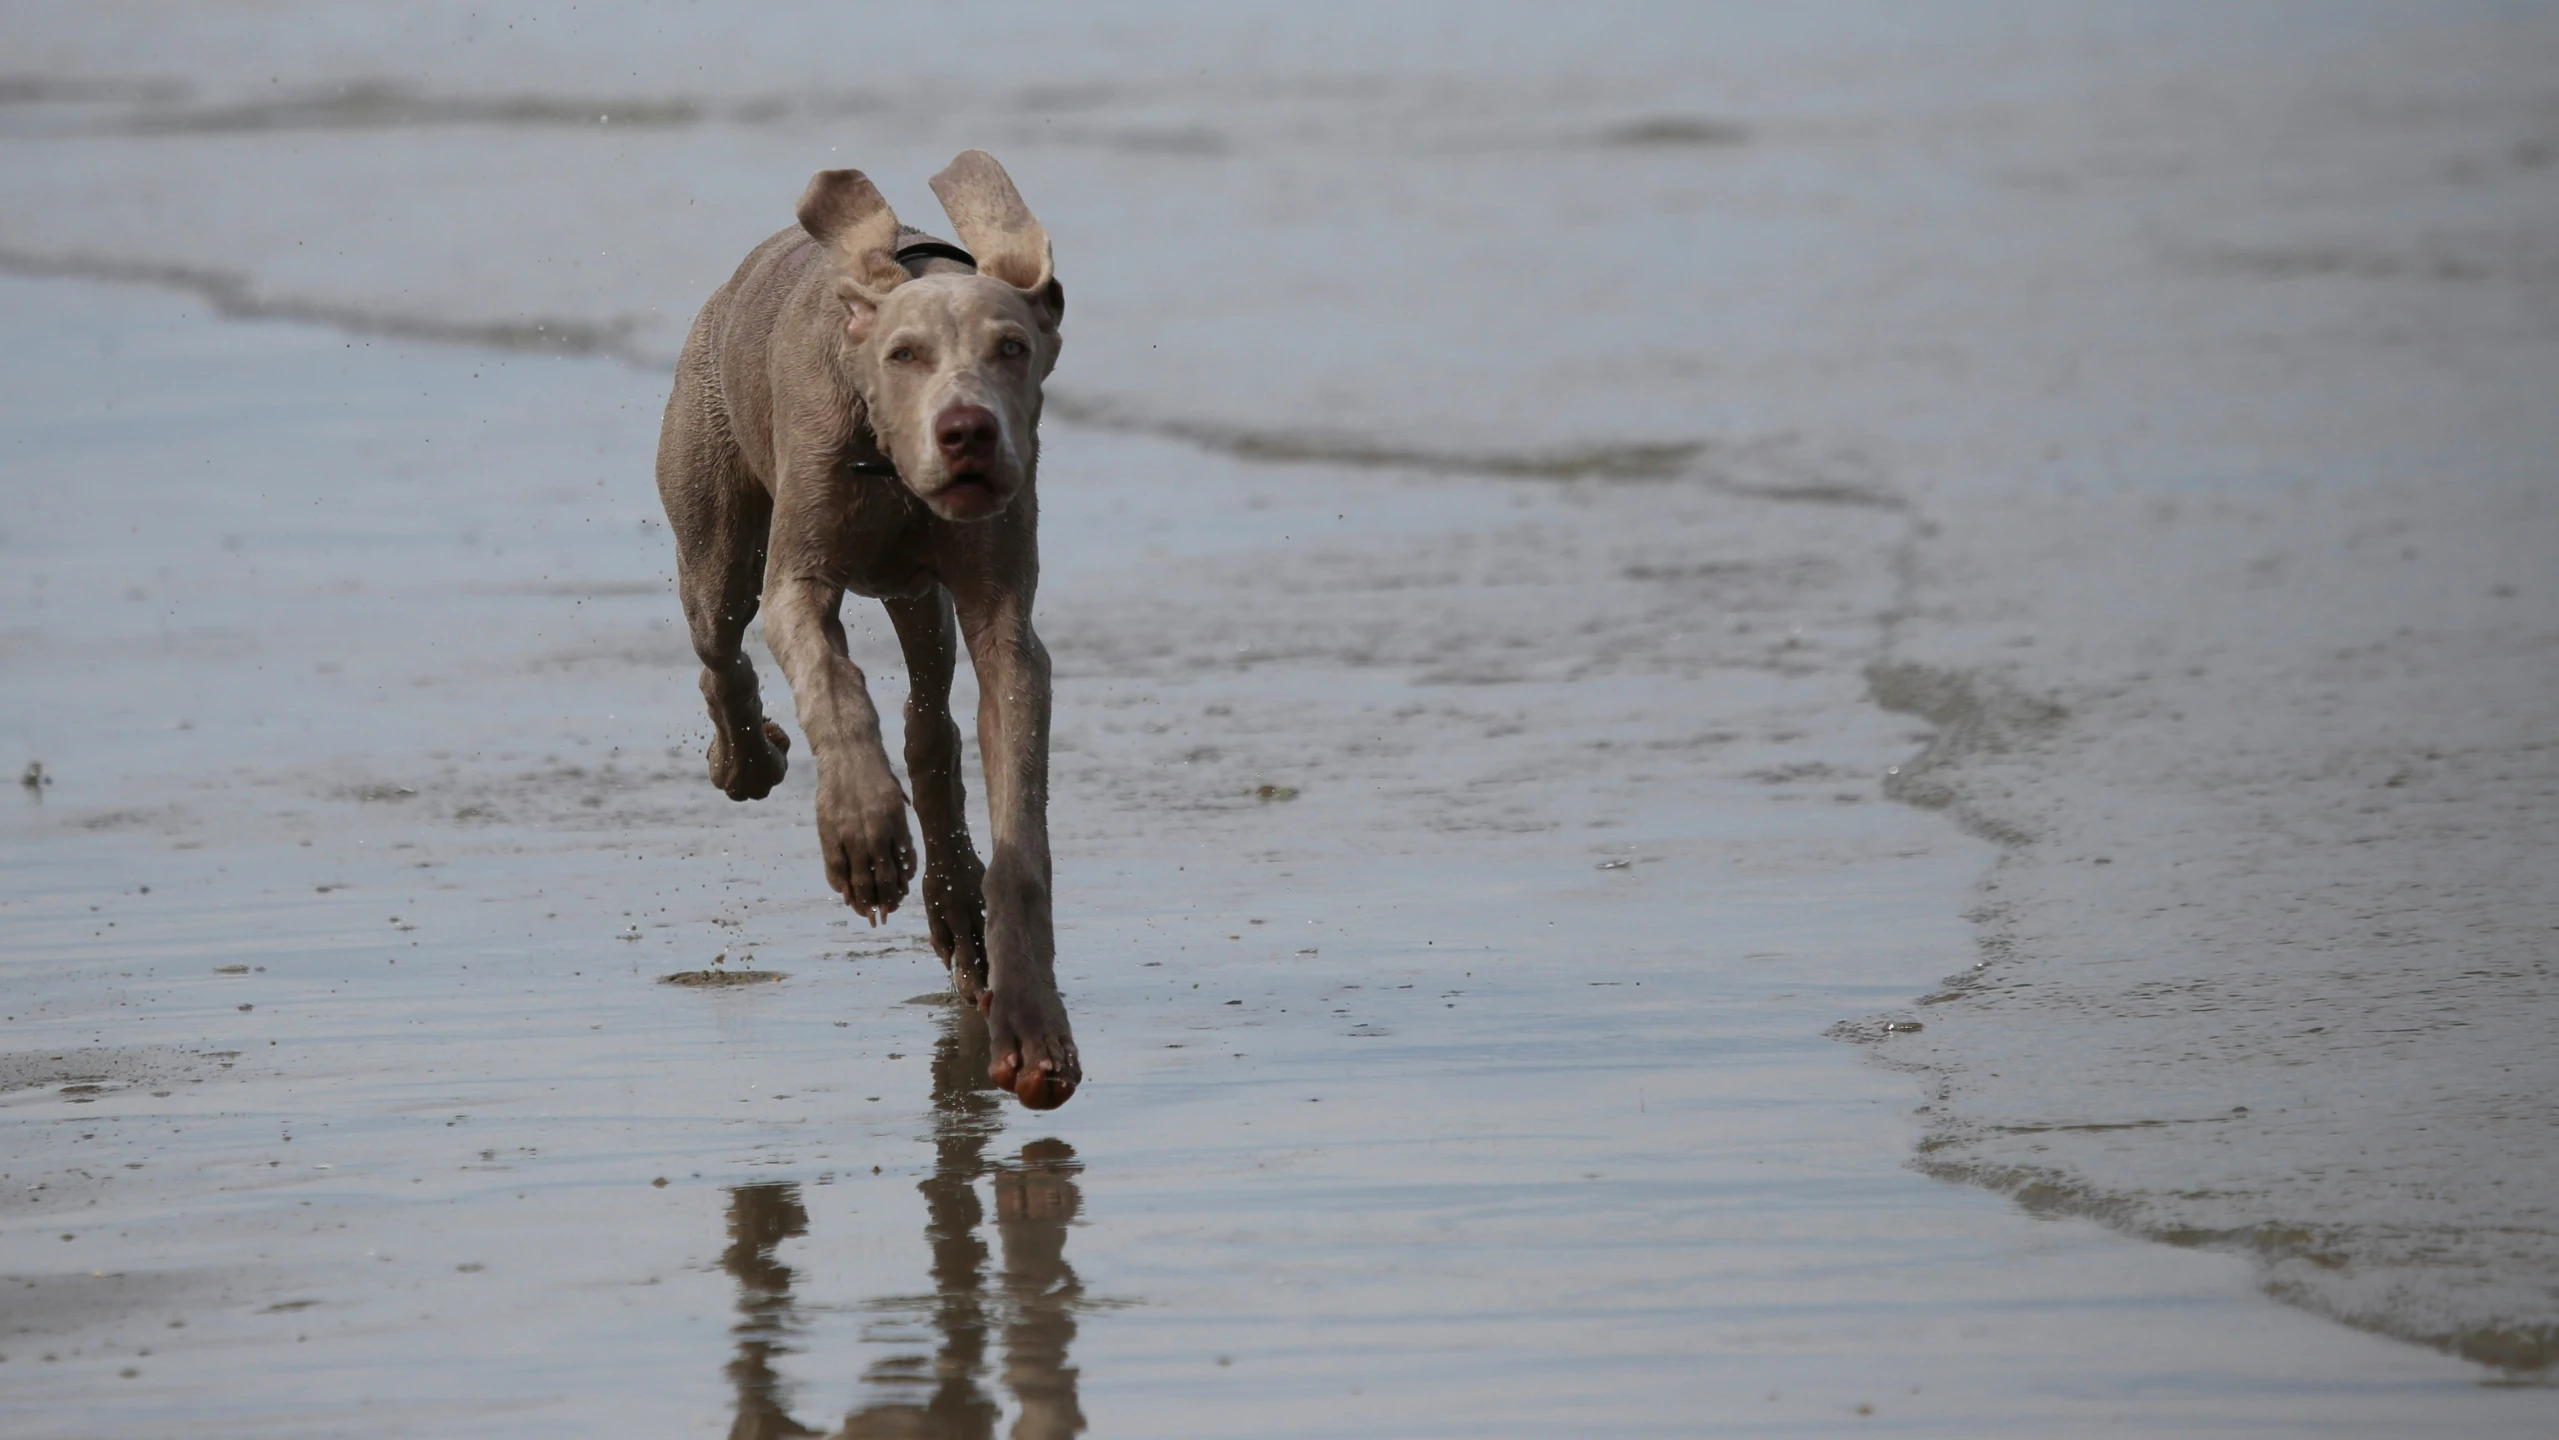 a gray dog running across a sandy beach